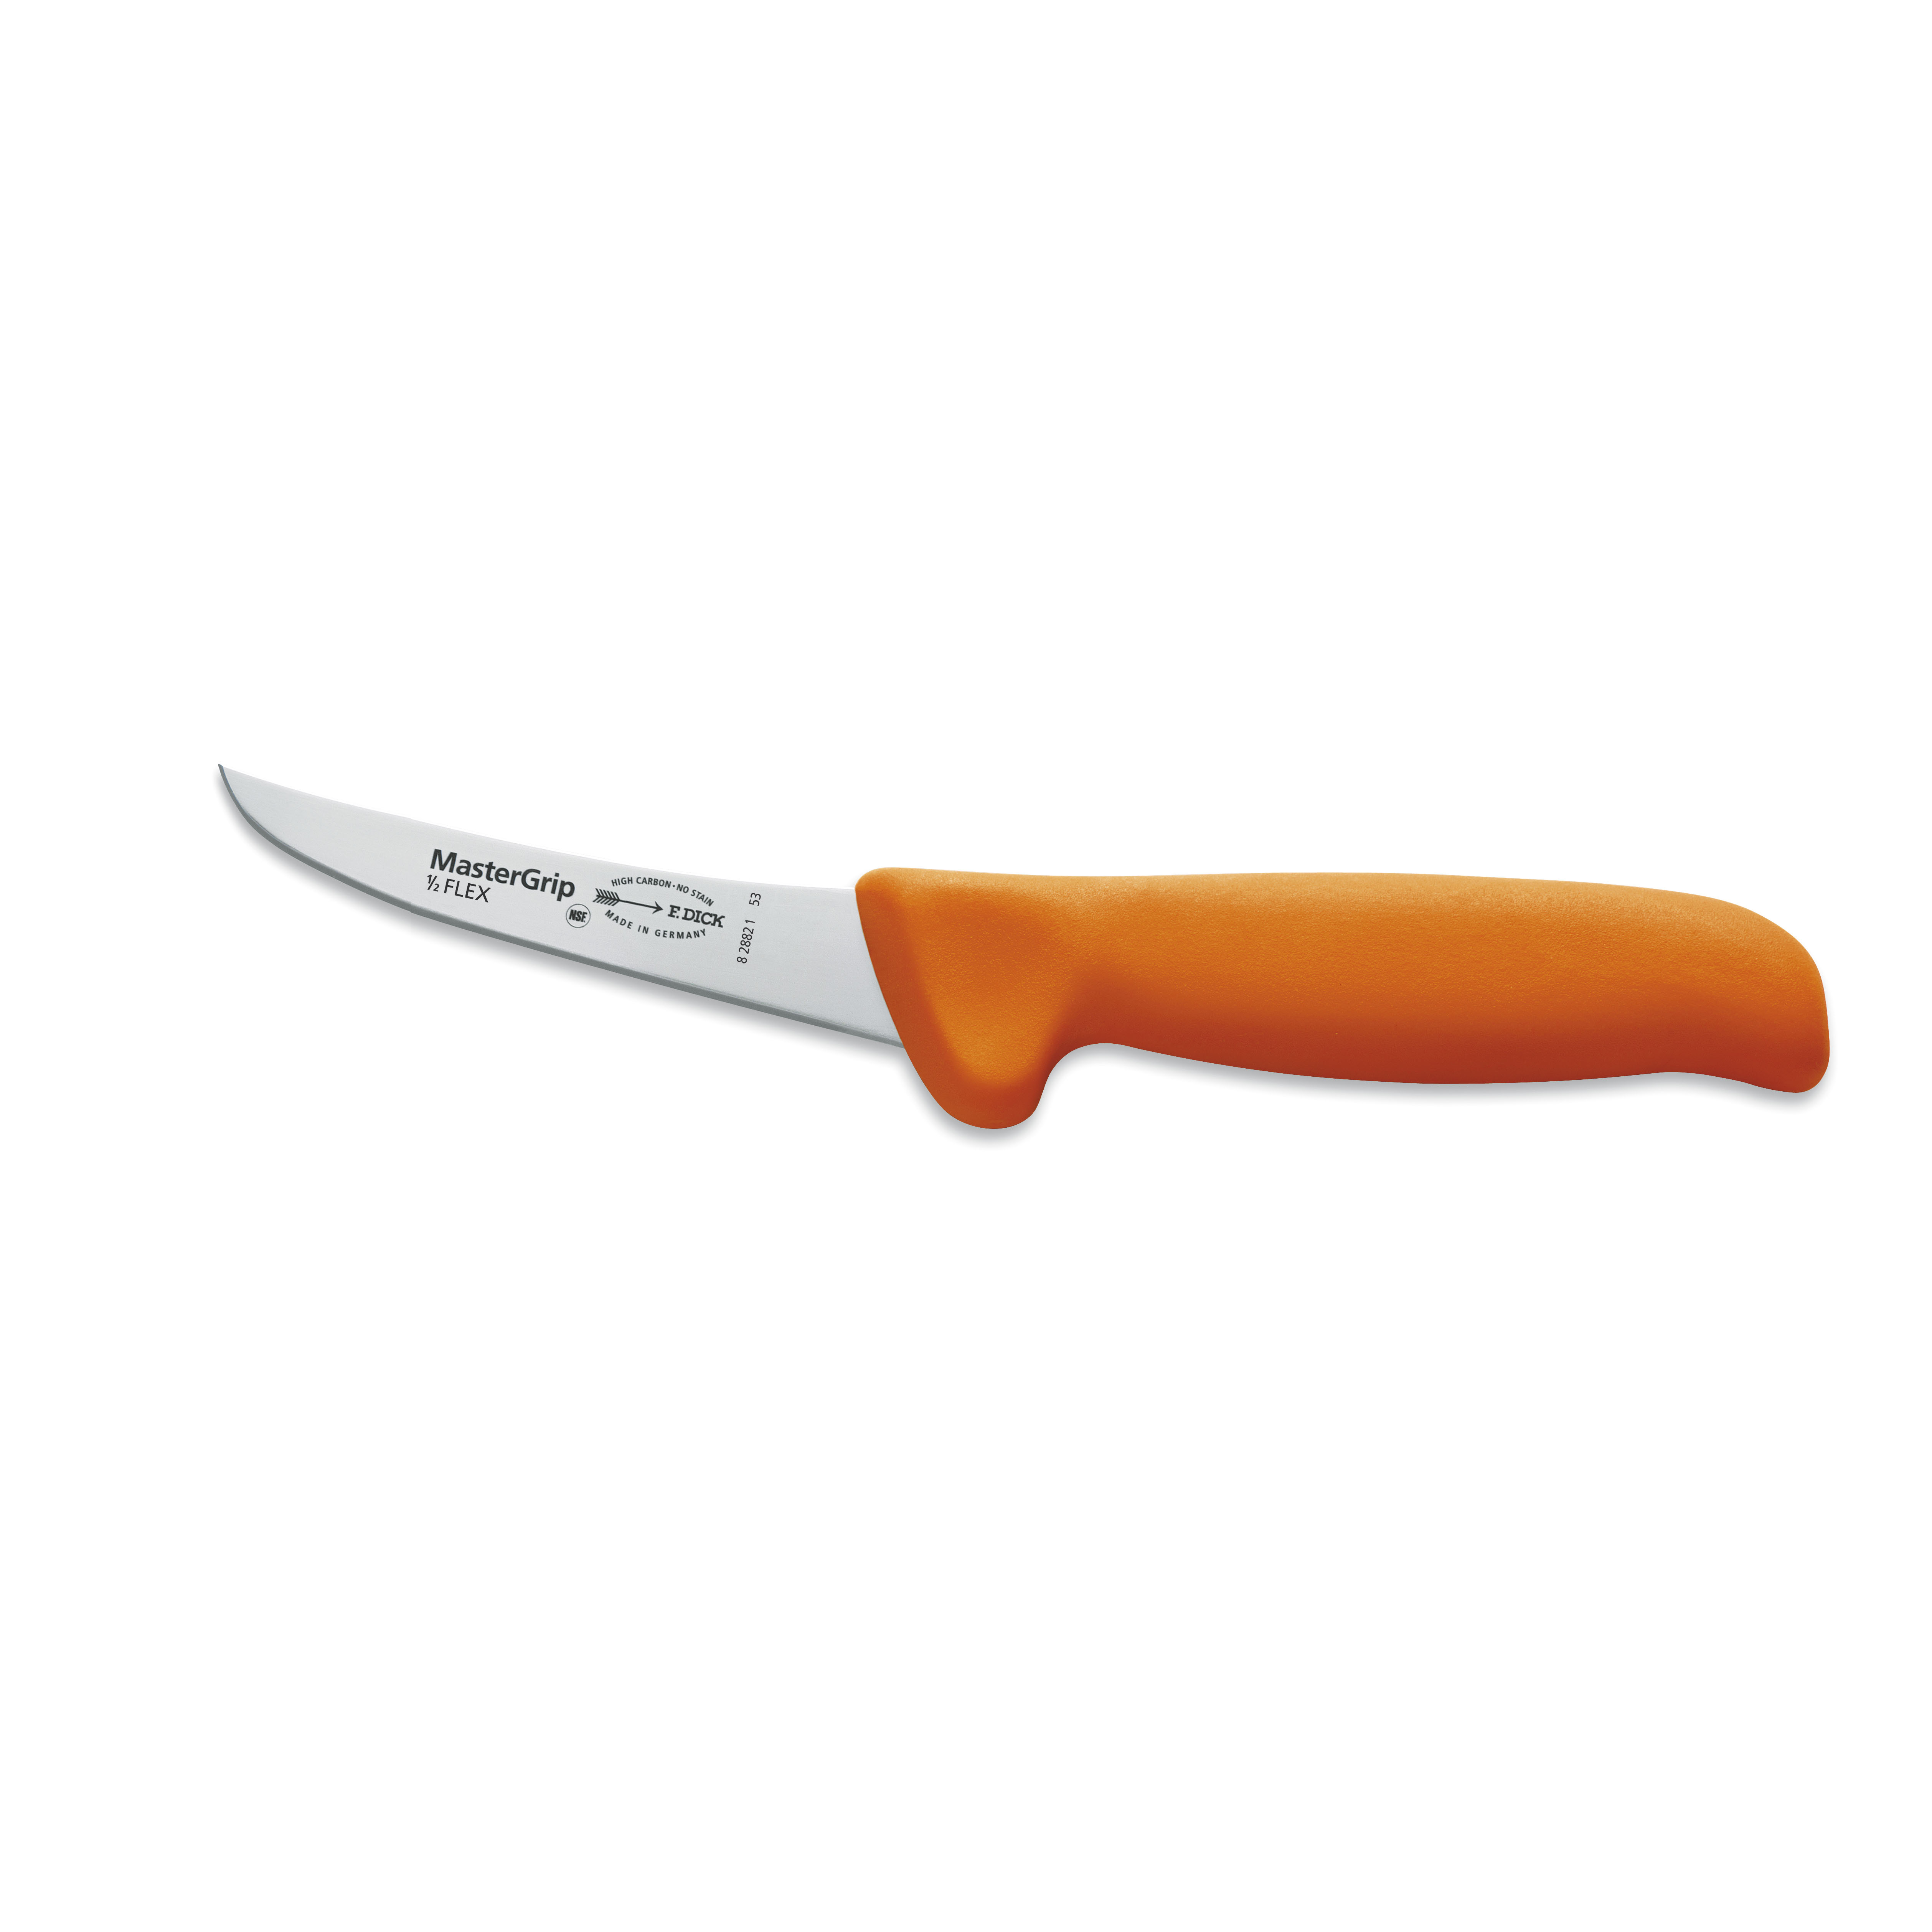 F.Dick MasterGrip orange, Ausbeinmesser, geschweifte Klinge, semi-flexibel, 10 cm, 8288210